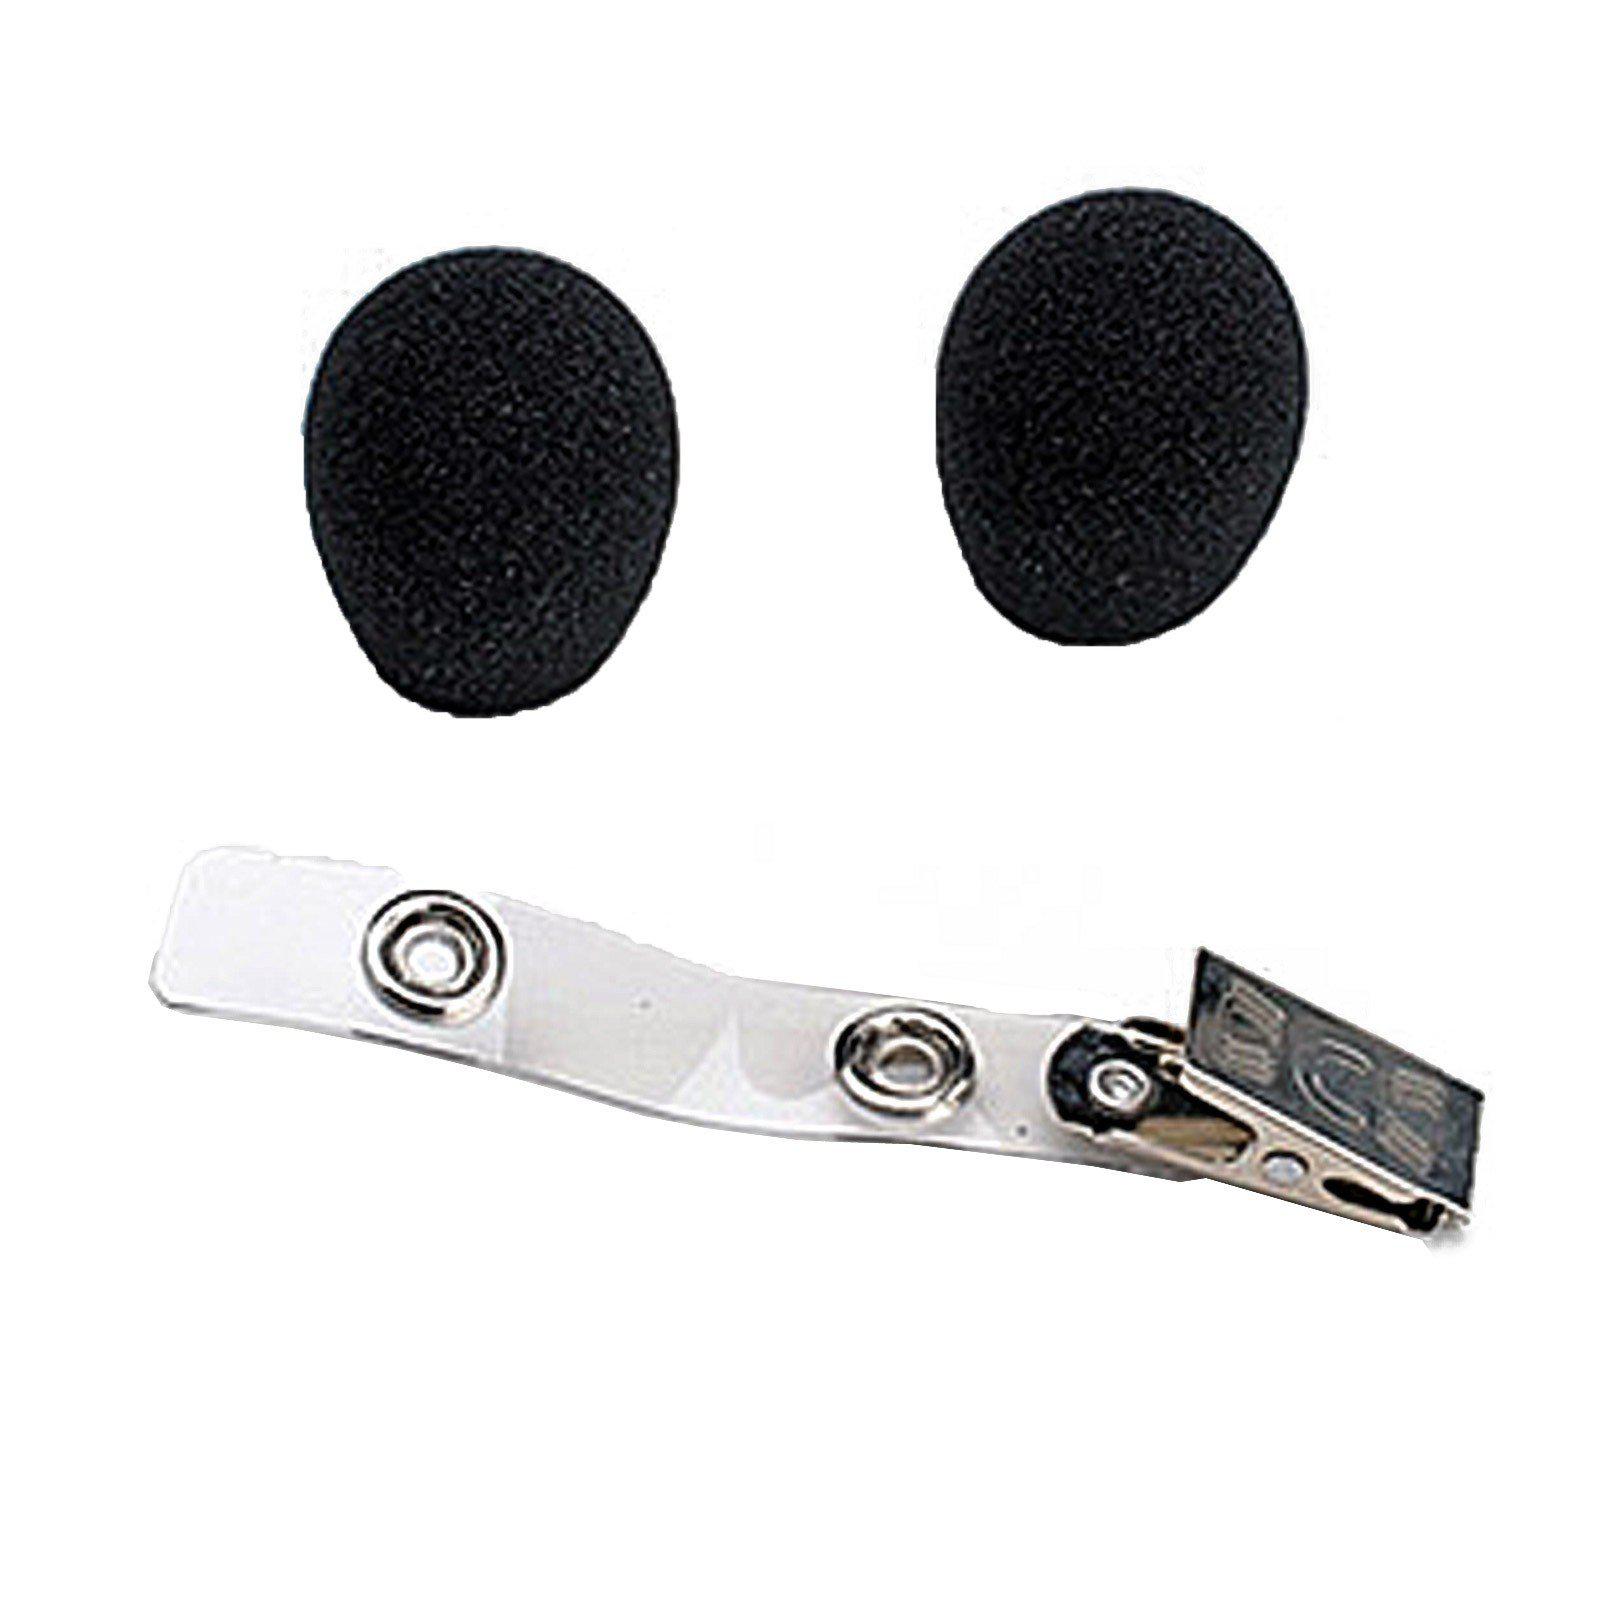 Shure - Pantalla Antiviento y Clip para Micrófono WH20 Mod.RK318WS_6